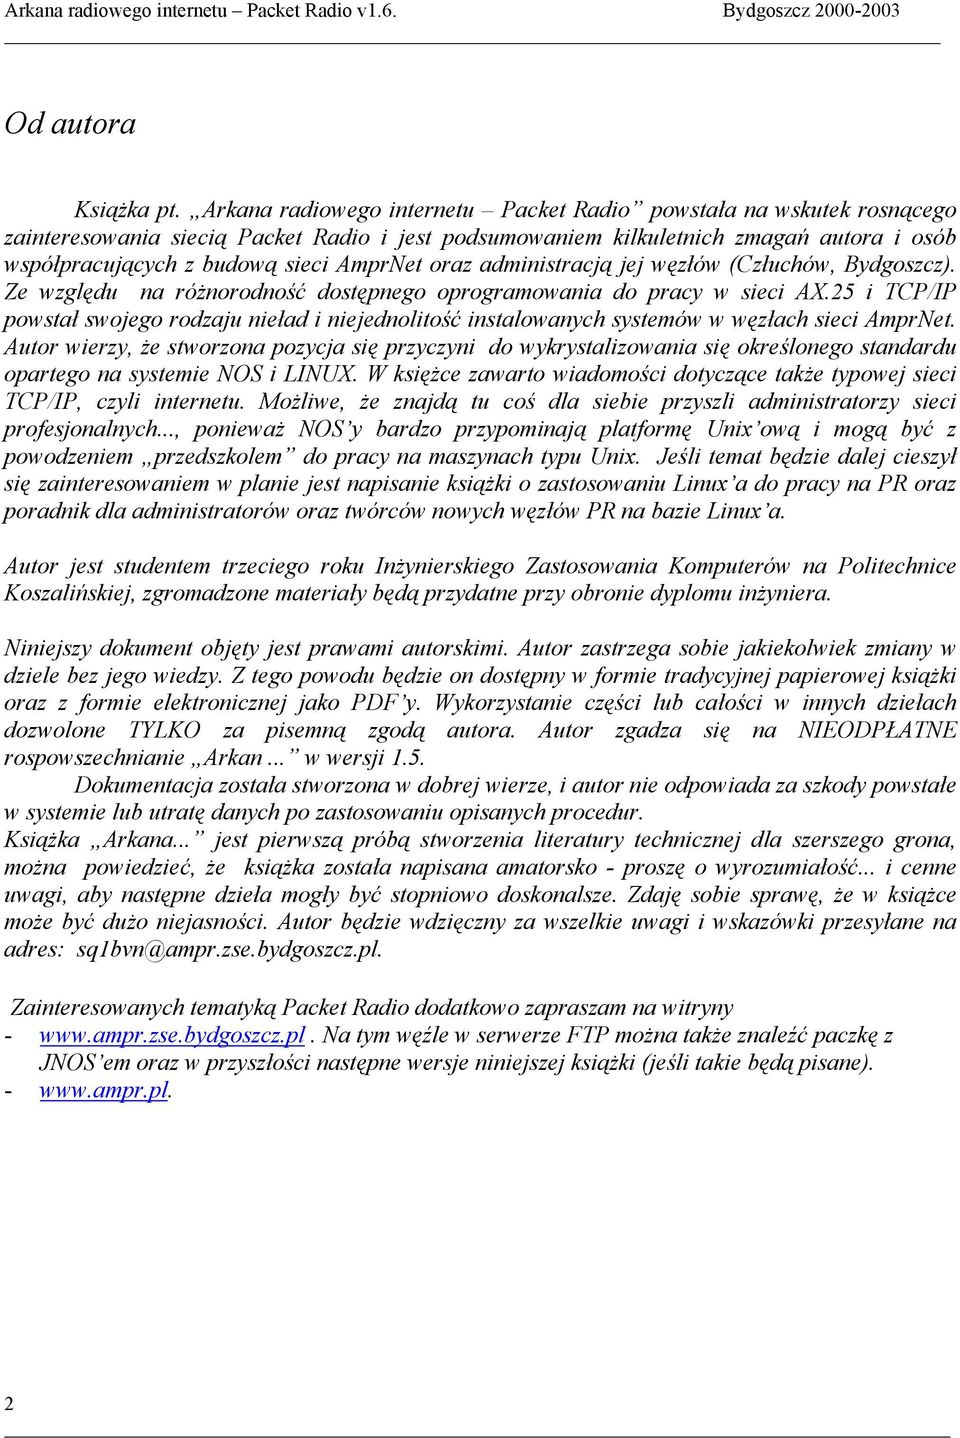 AmprNet oraz administracją jej węzłów (Człuchów, Bydgoszcz). Ze względu na różnorodność dostępnego oprogramowania do pracy w sieci AX.